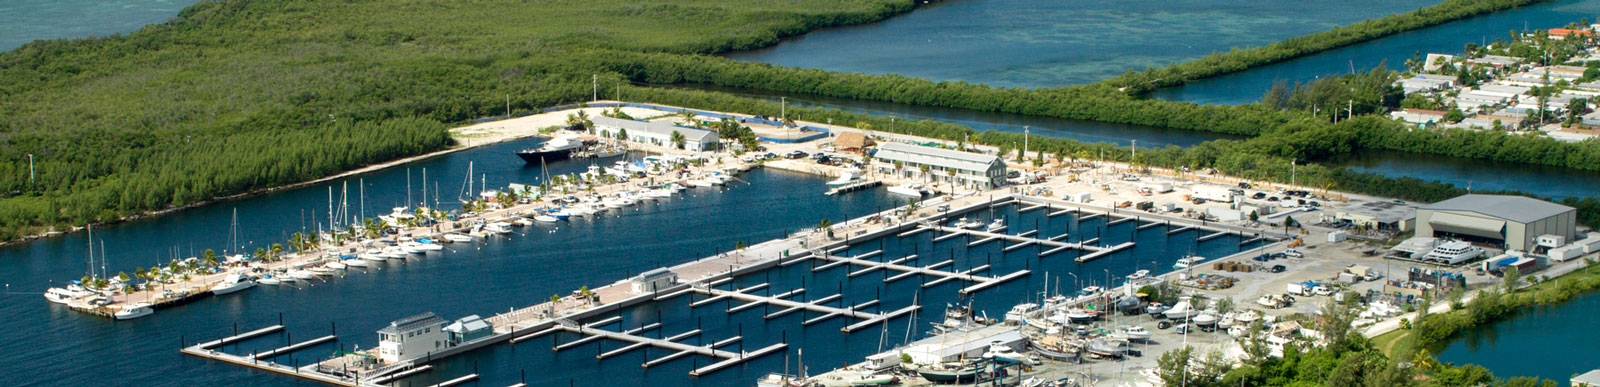 Visit Stock Island Marina – Key West, Florida